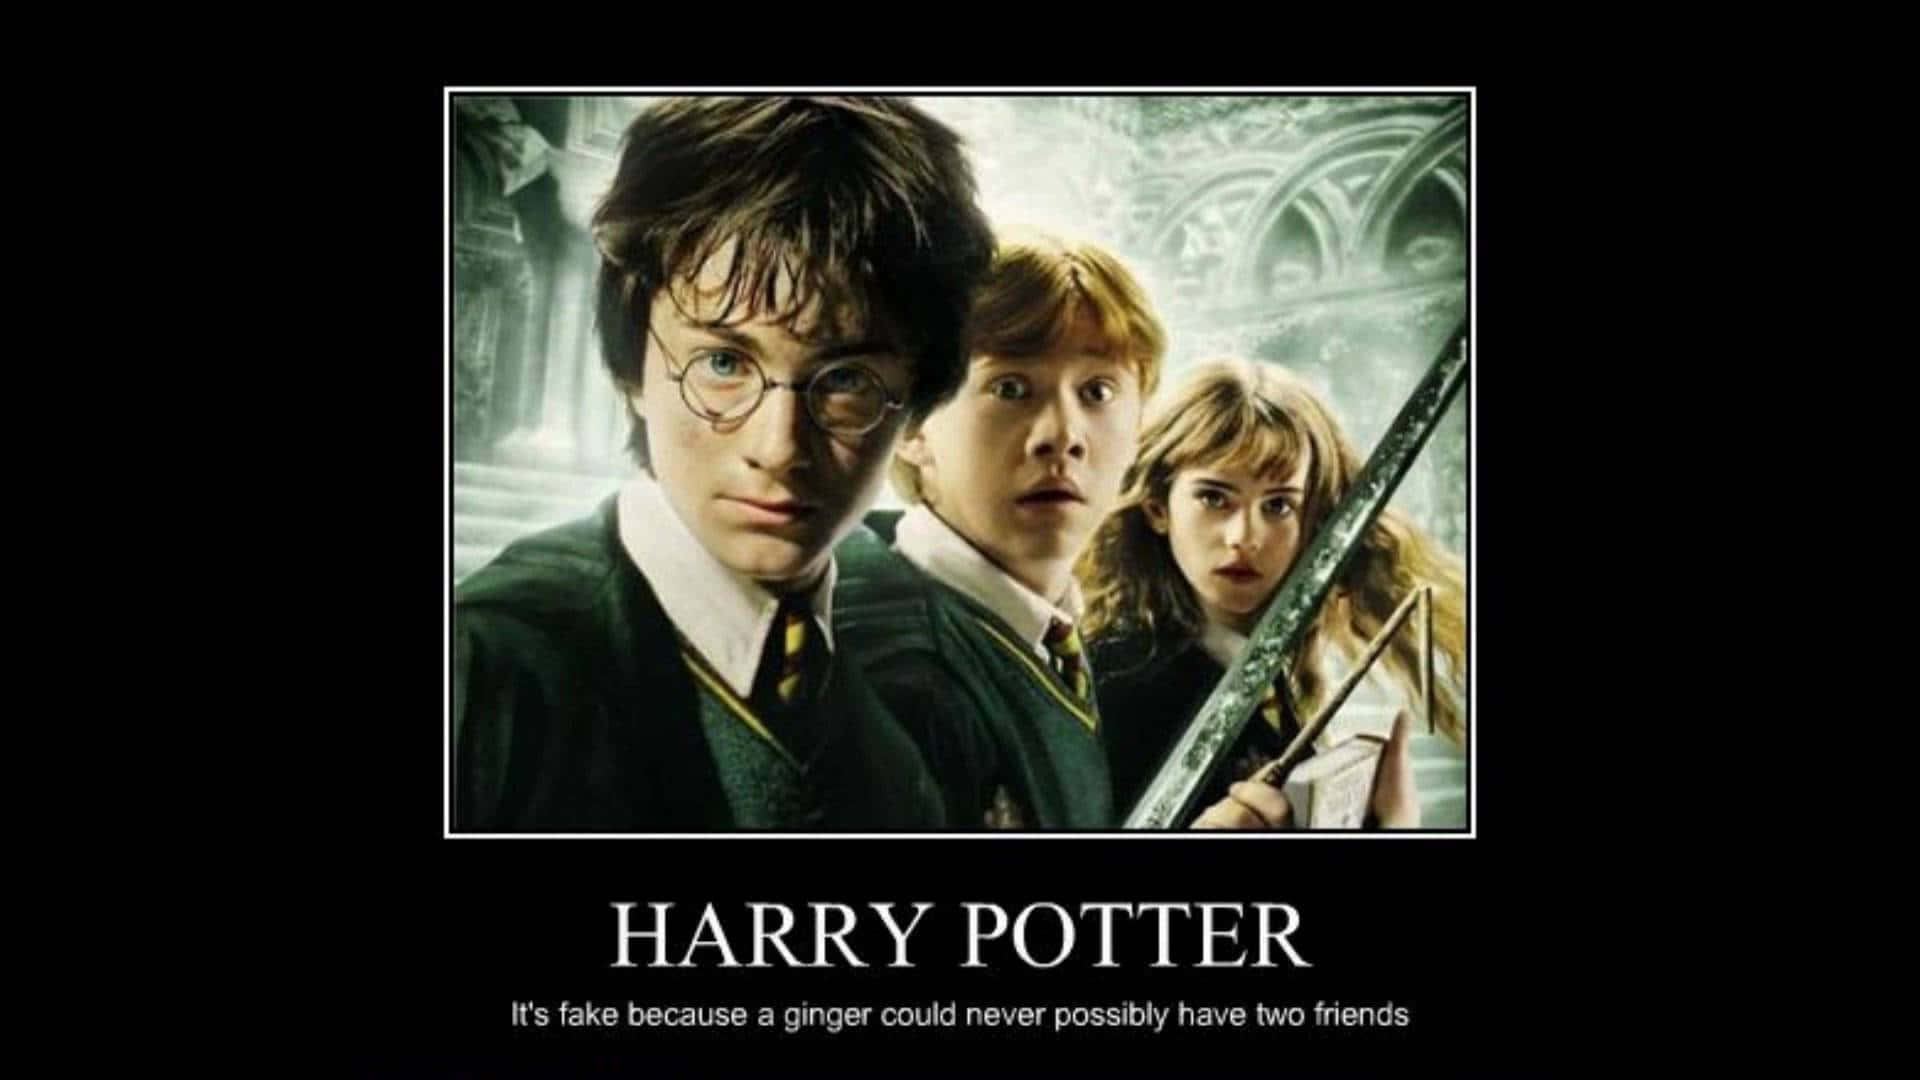 Livet af en Hogwarts-elev er ikke altid alvorligt. Wallpaper